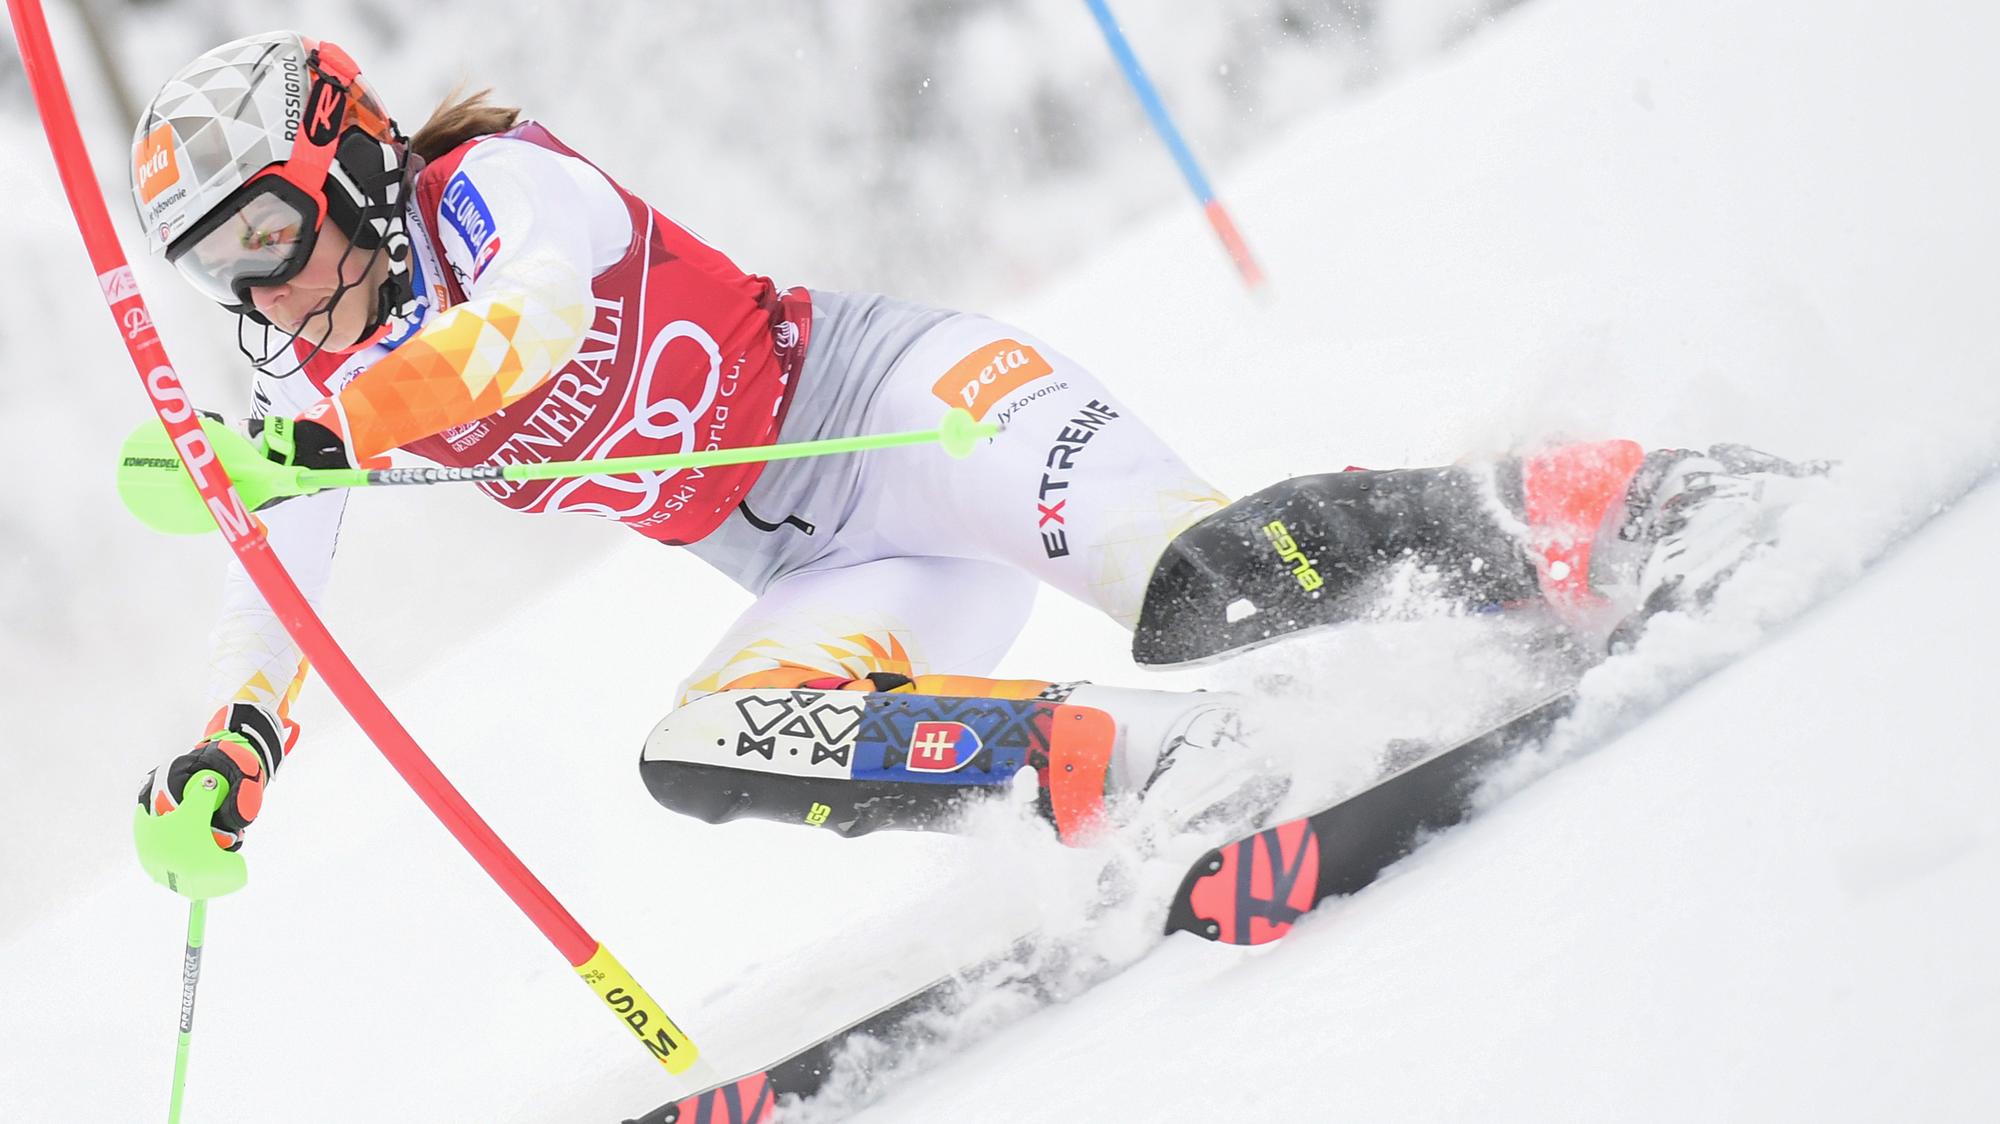 LIVE : Petra Vlhová dnes 2 kolo - slalom / Levi | Šport.sk